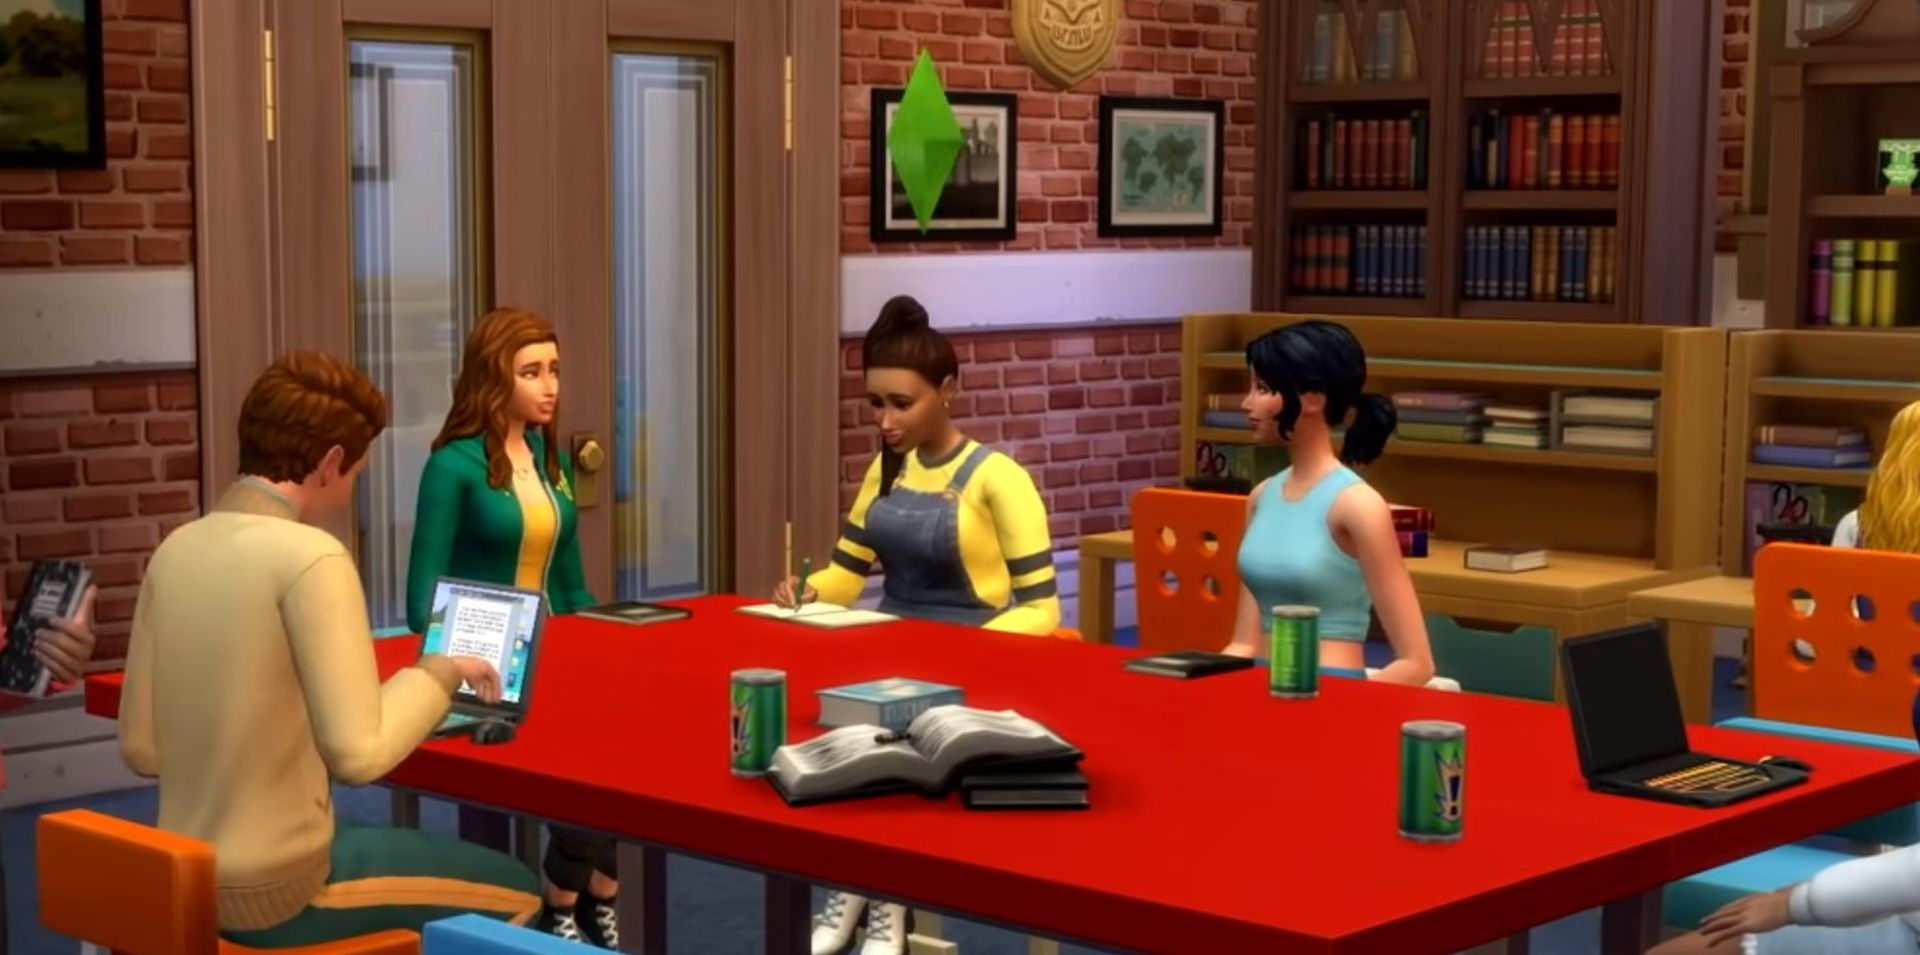 Rehber: Sims 4 ödev yapma